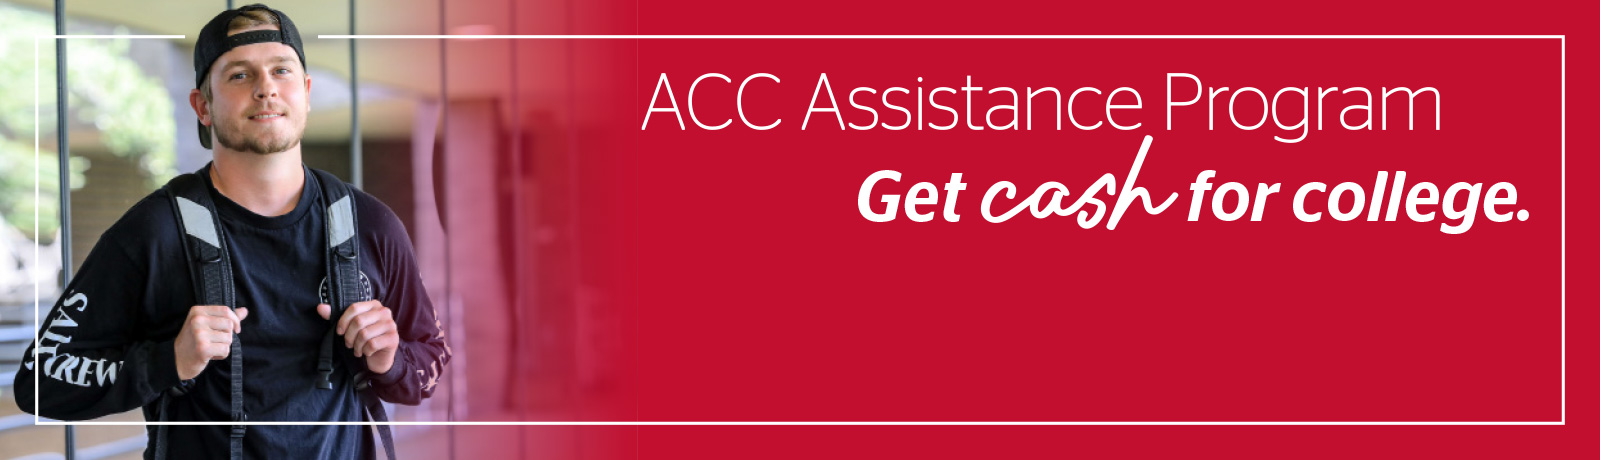 ACC Assistance Program